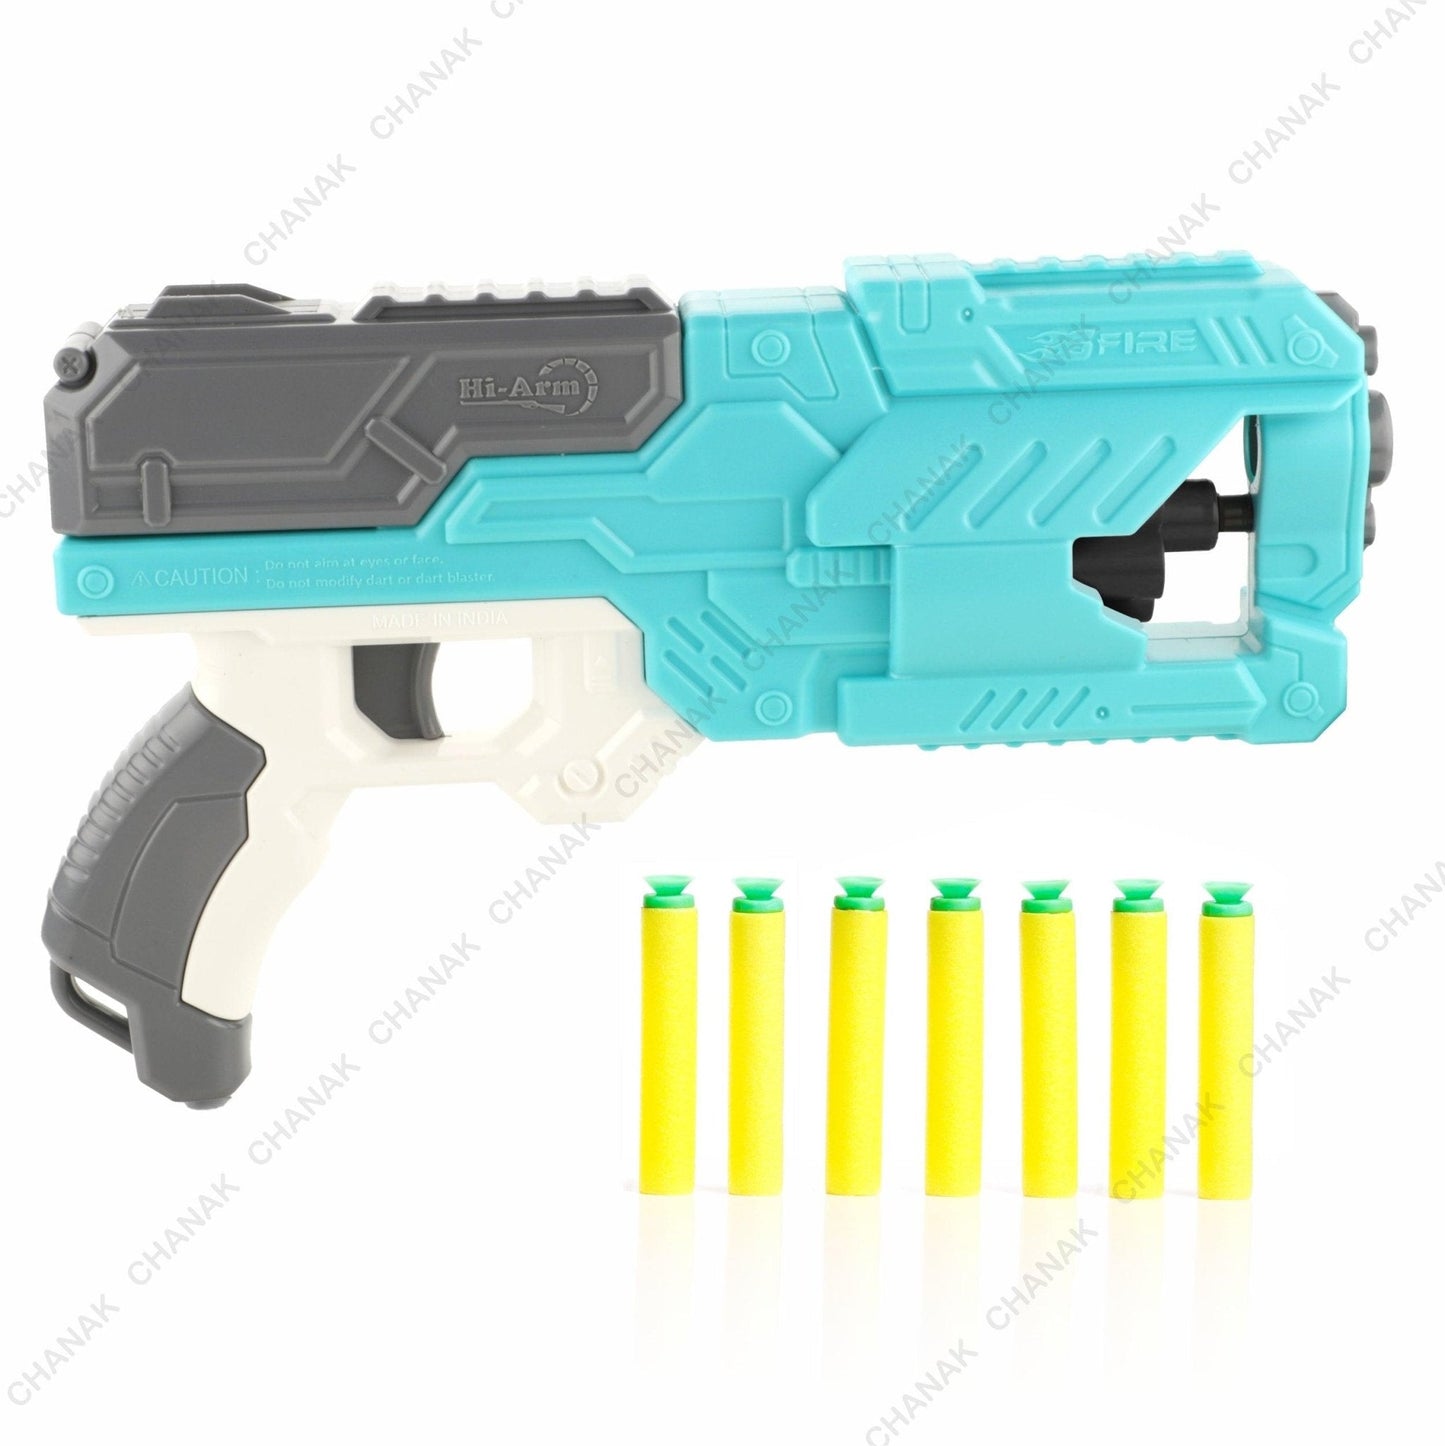 Chanak Six Fire Toy Blaster Gun (Light Blue) - chanak